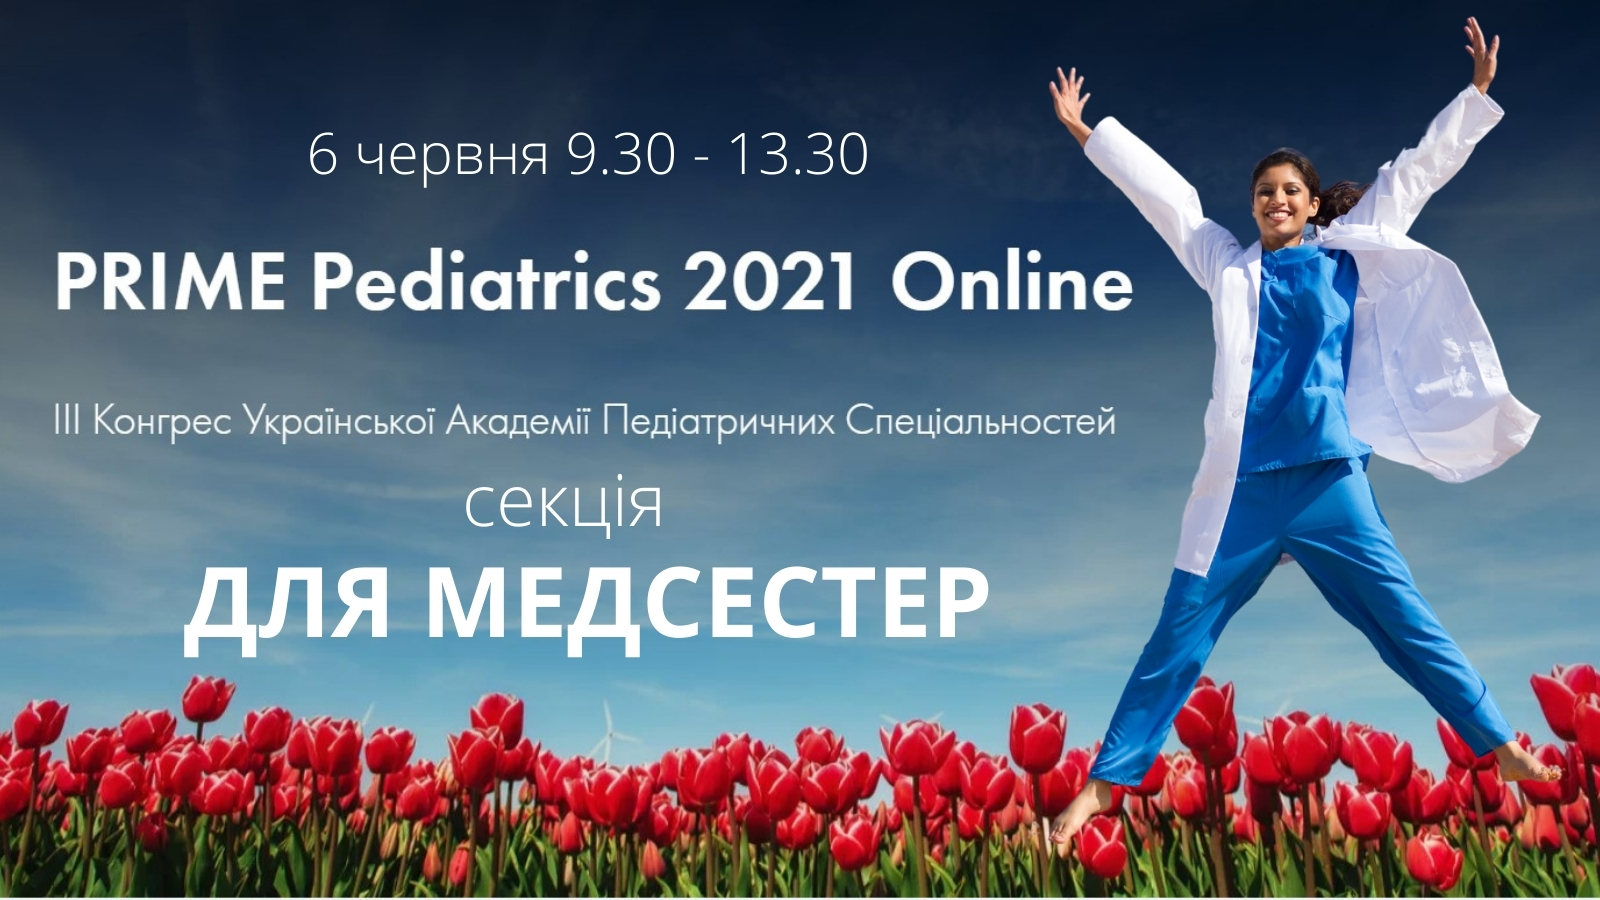 PRIME Pediatrics 2021 - для медсестер